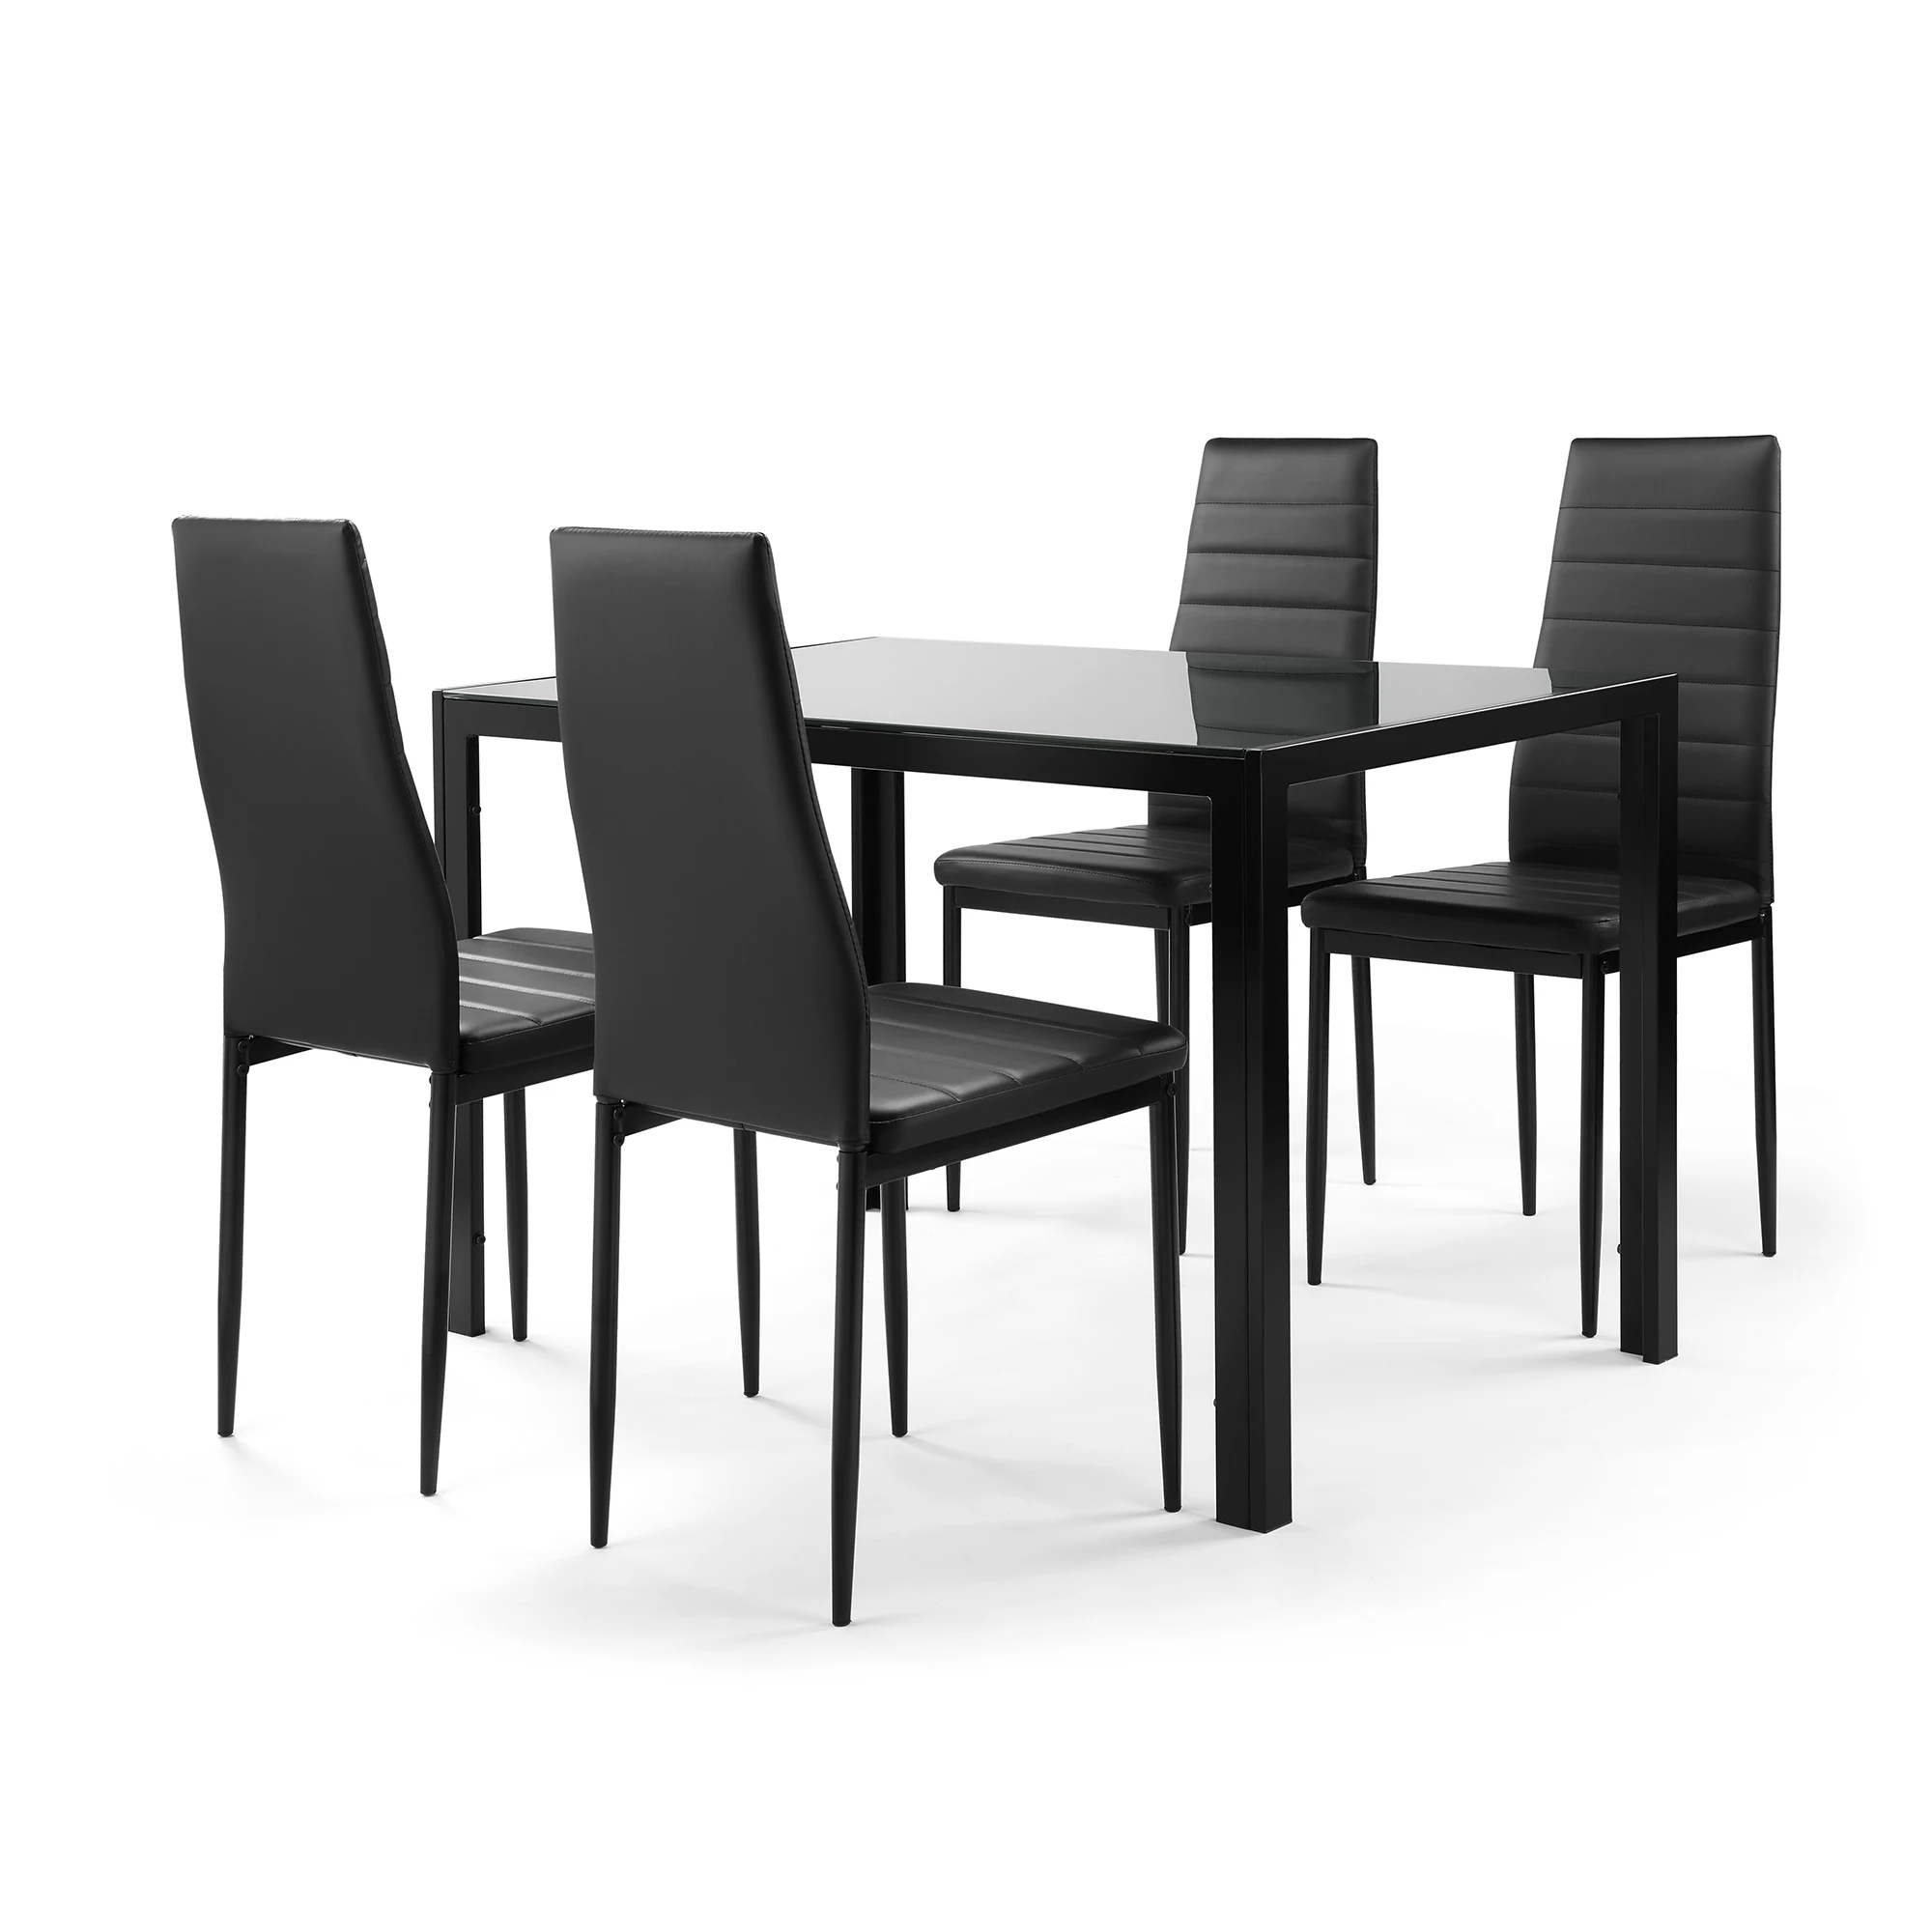 5 חתיכות אוכל שולחן כיסא סט עבור 4 כולל 1 מזג זכוכית שולחן העבודה אוכל שולחן + 4 גבוהה משענת פו עור כיסאות שחור